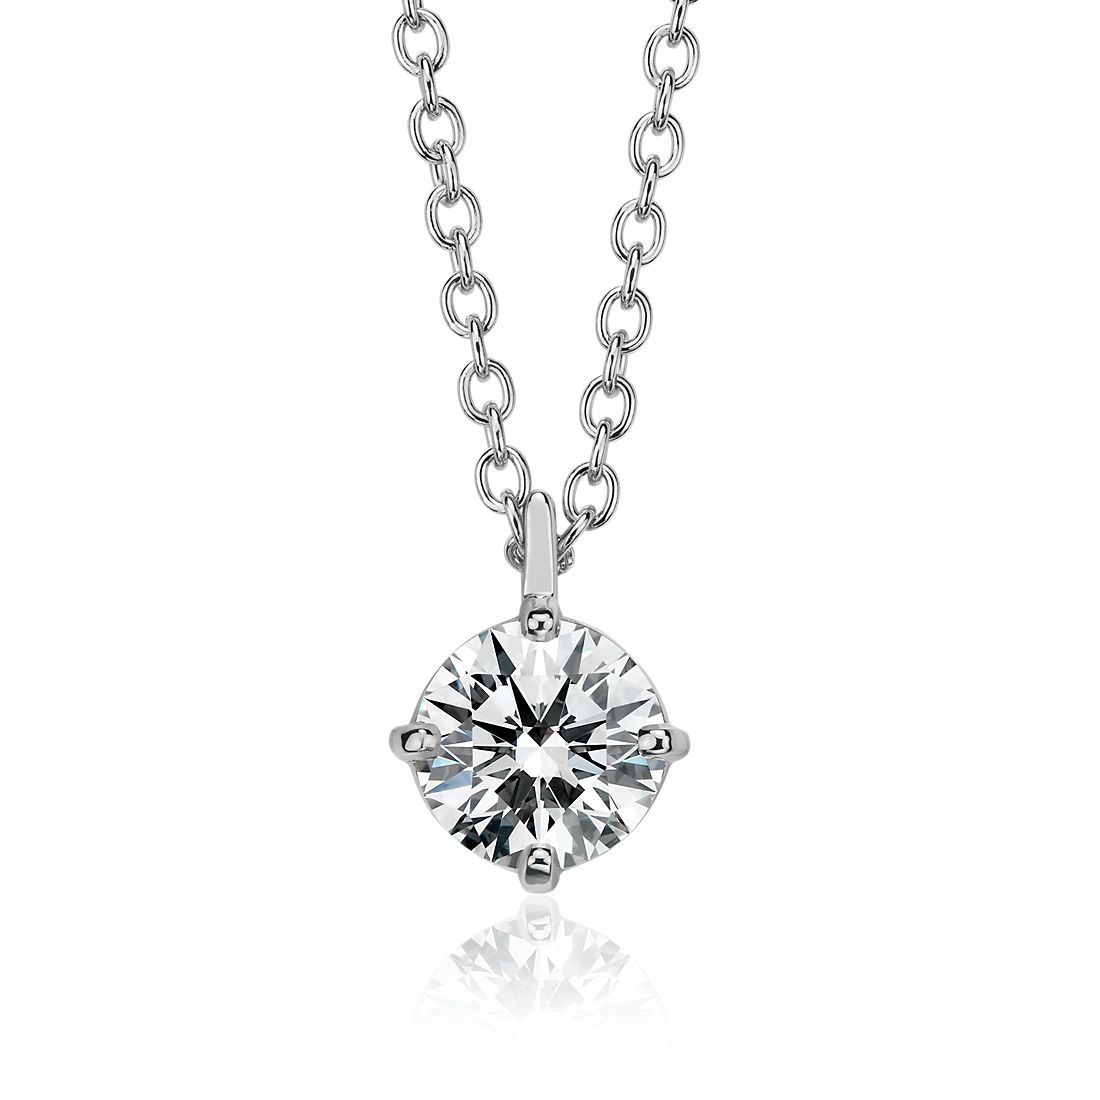 Astor Diamond Solitaire Pendant in Platinum (1 1/4 ct. tw.) - F / VS2